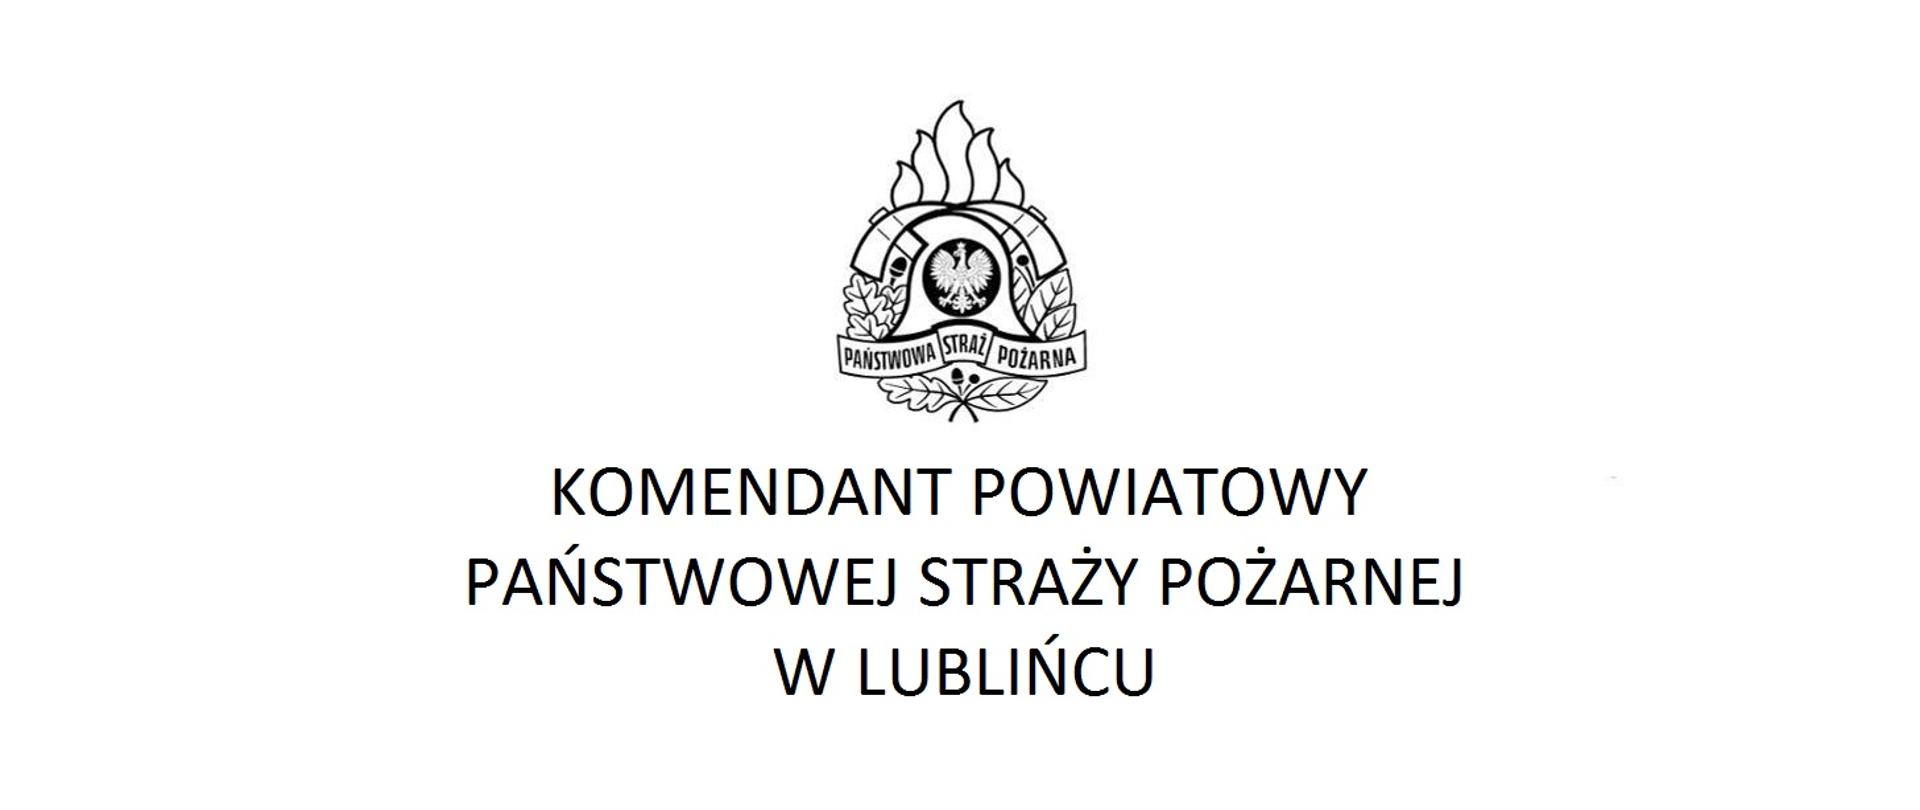 Baner z logo Państwowej Straży Pożarnej a pod nim napis Komendant Powiatowy Państwowej Straży Pożarnej w Lublińcu